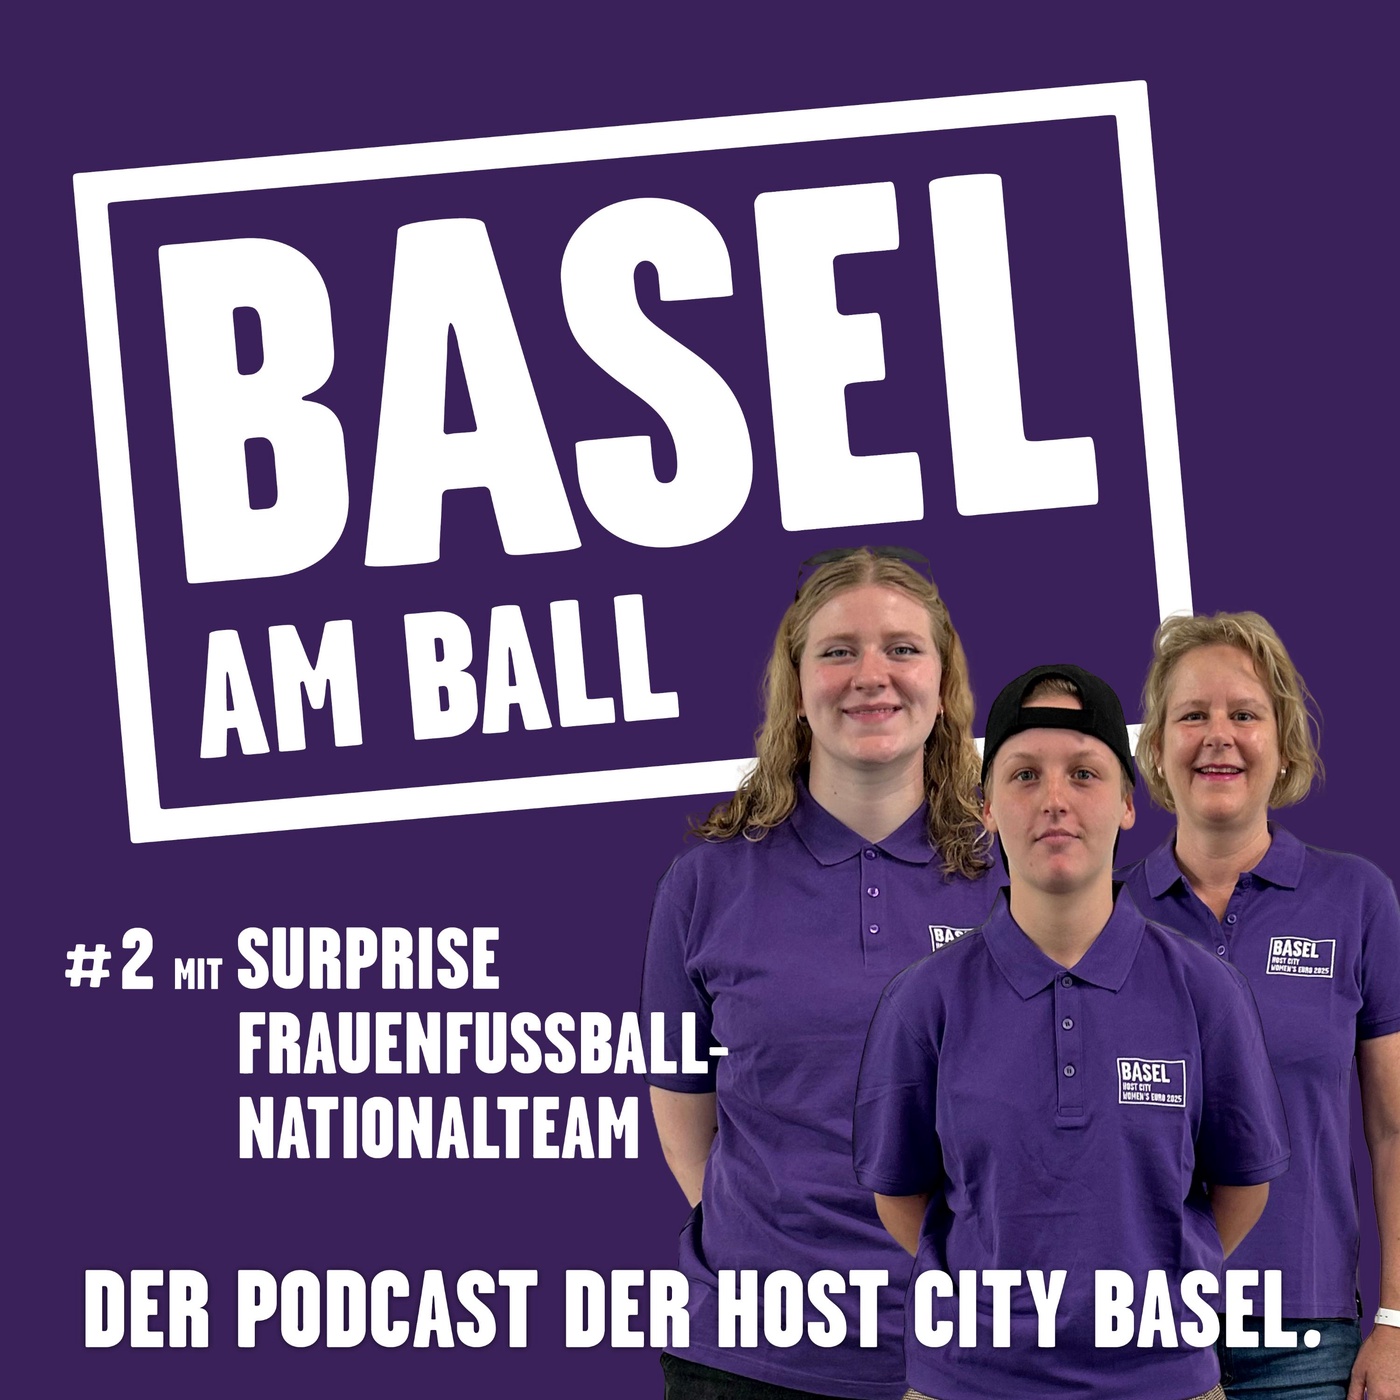 Basel am Ball #2 mit dem Surprise Frauenfussball-Nationalteam